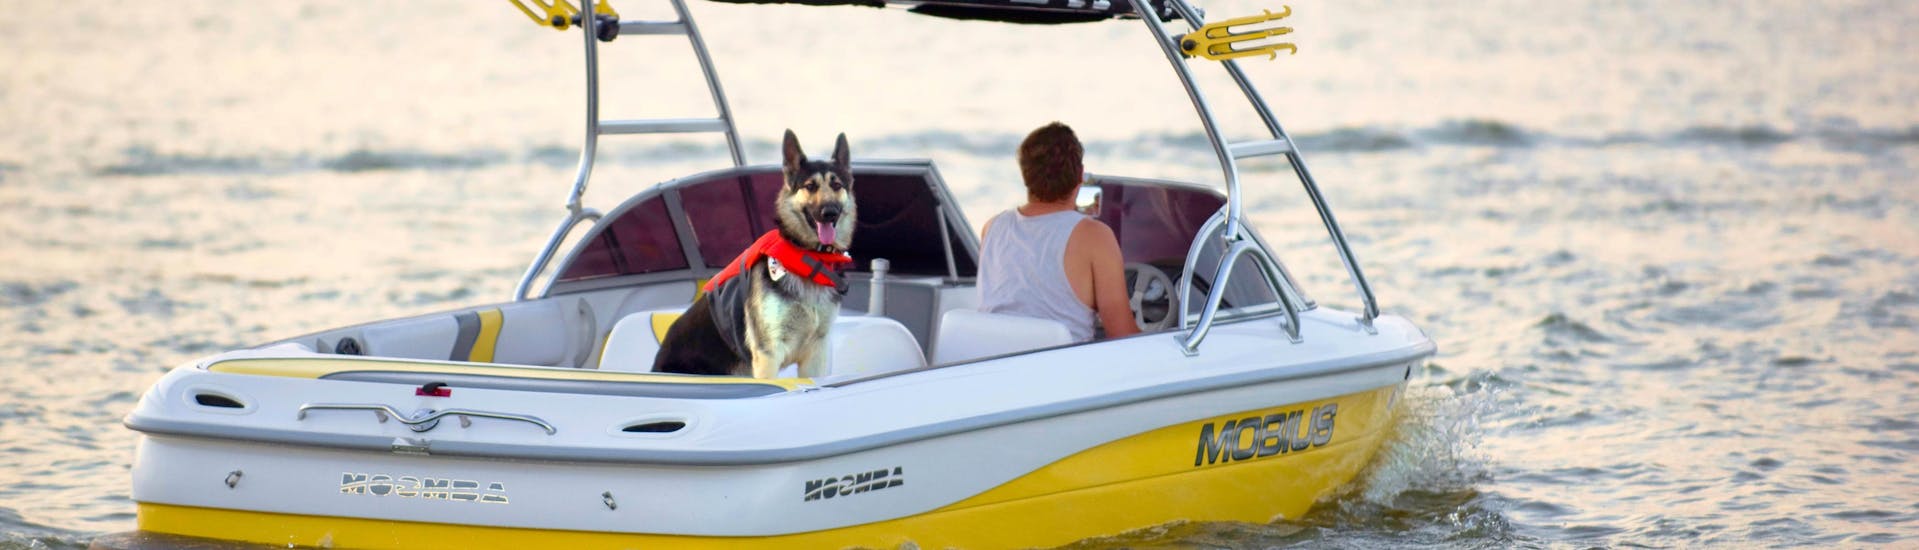 Una persona divirtiéndose con su perro durante una actividad de alquiler de barcos con perros y mascotas.